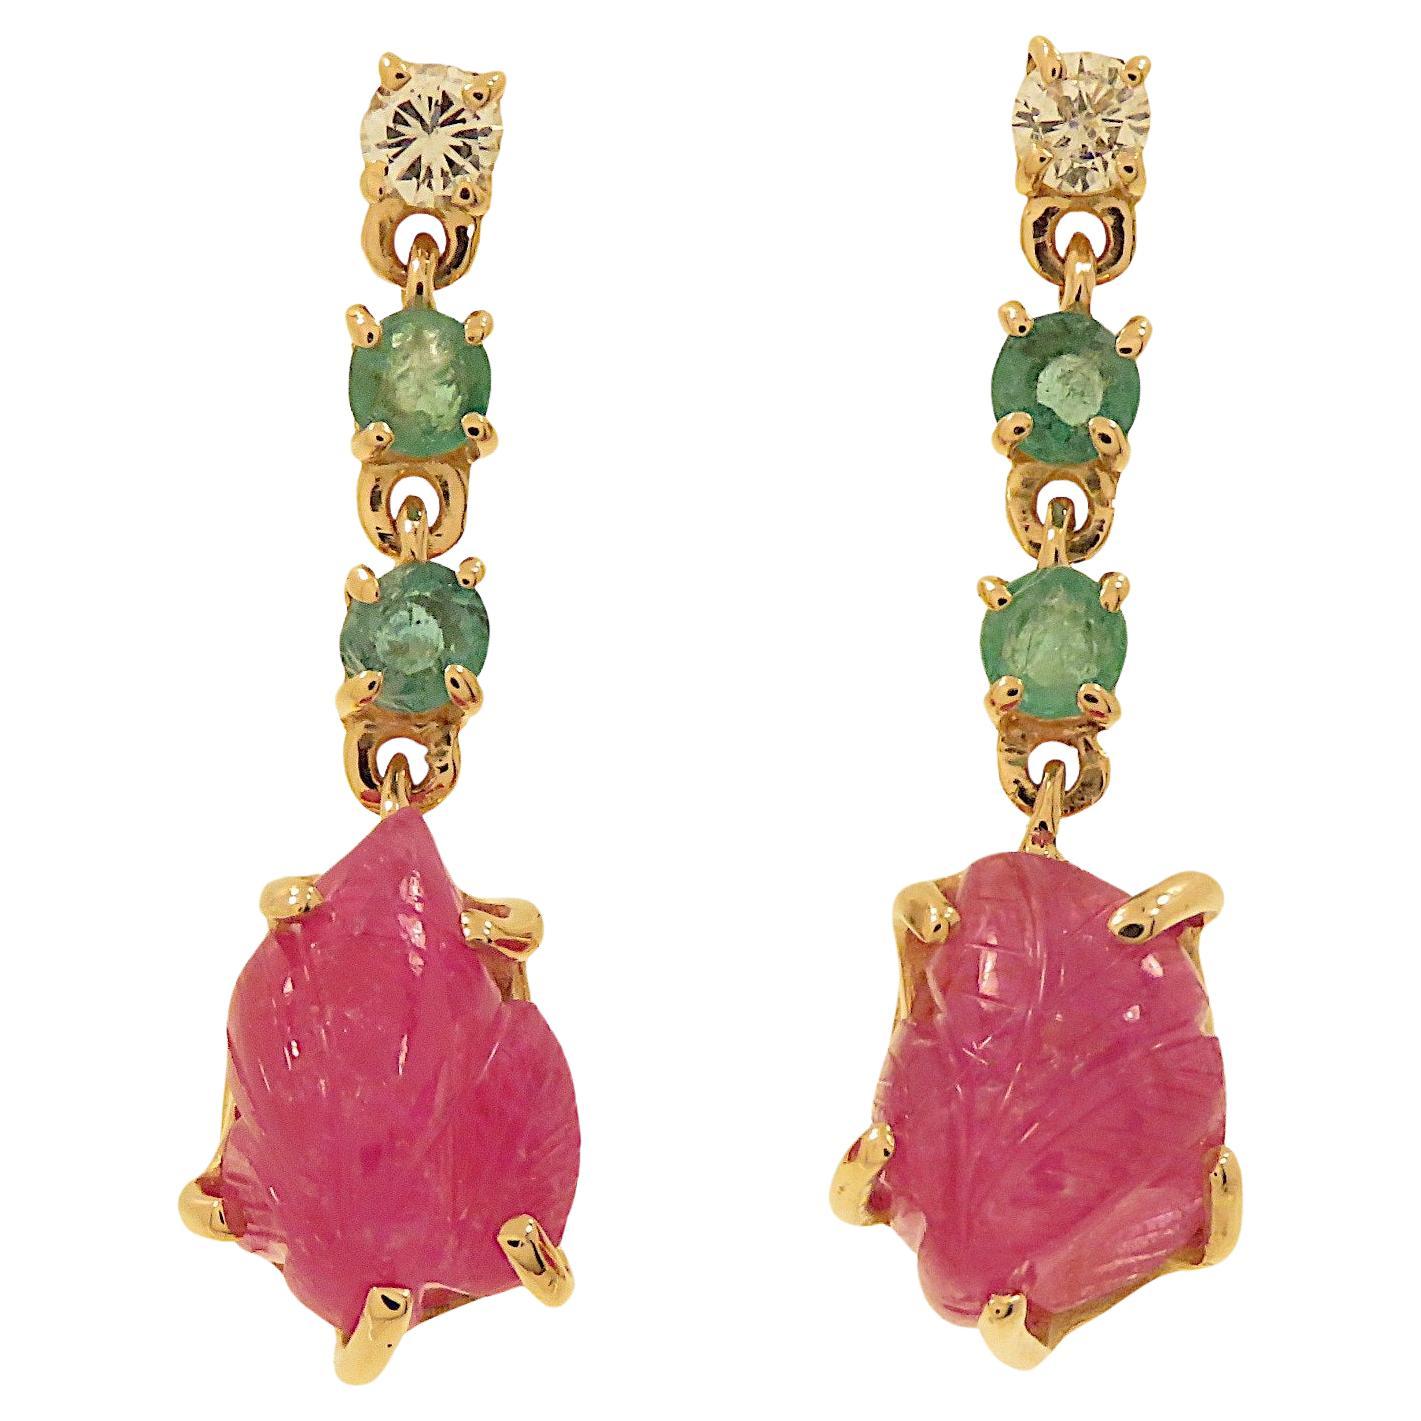 Botta gioielli orecchini mit Diamanti-Rubin und smeraldi in Ororosa in Ororosa